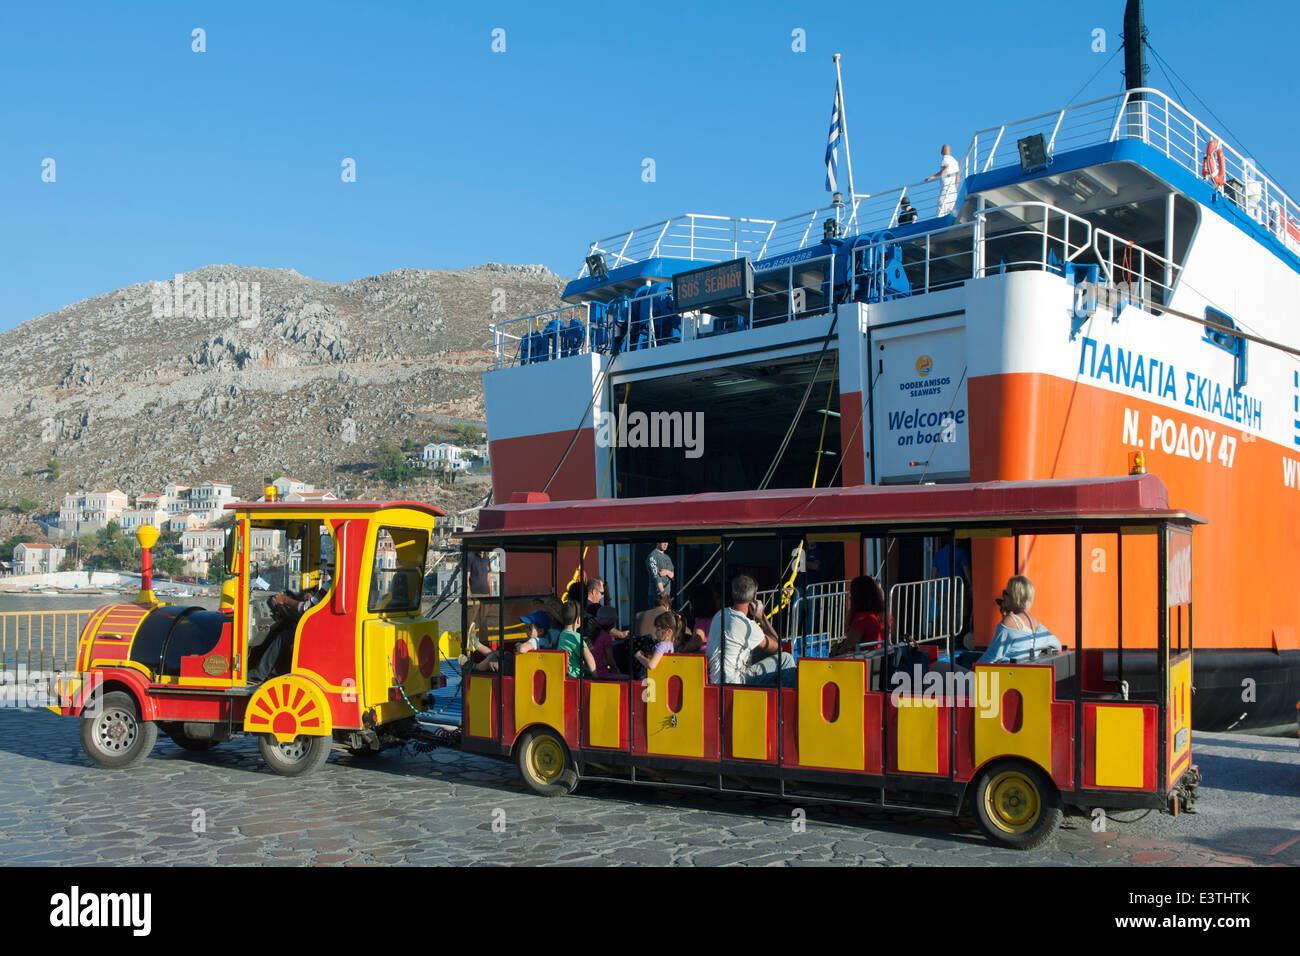 Spanien, Symi, Touristen werden mit der Toristenbahn zum Hafen gefahren Banque D'Images